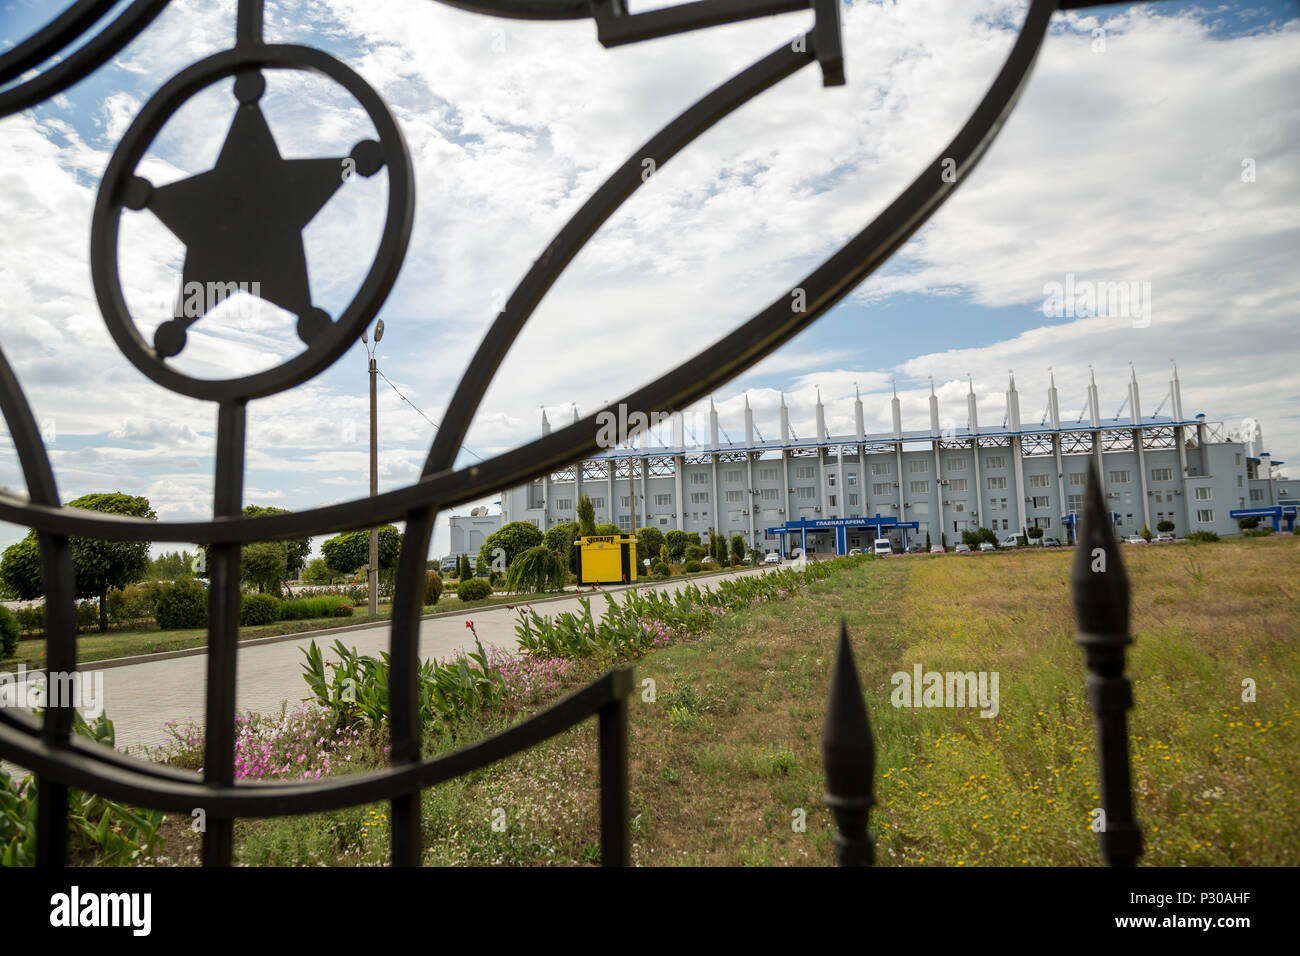 25.08.2016, Tiraspol, Transnistria Moldavia - El Sheriff complejo deportivo con dos estadios de fútbol (foto: La gran Arena) pertenece a la multicultu Foto de stock